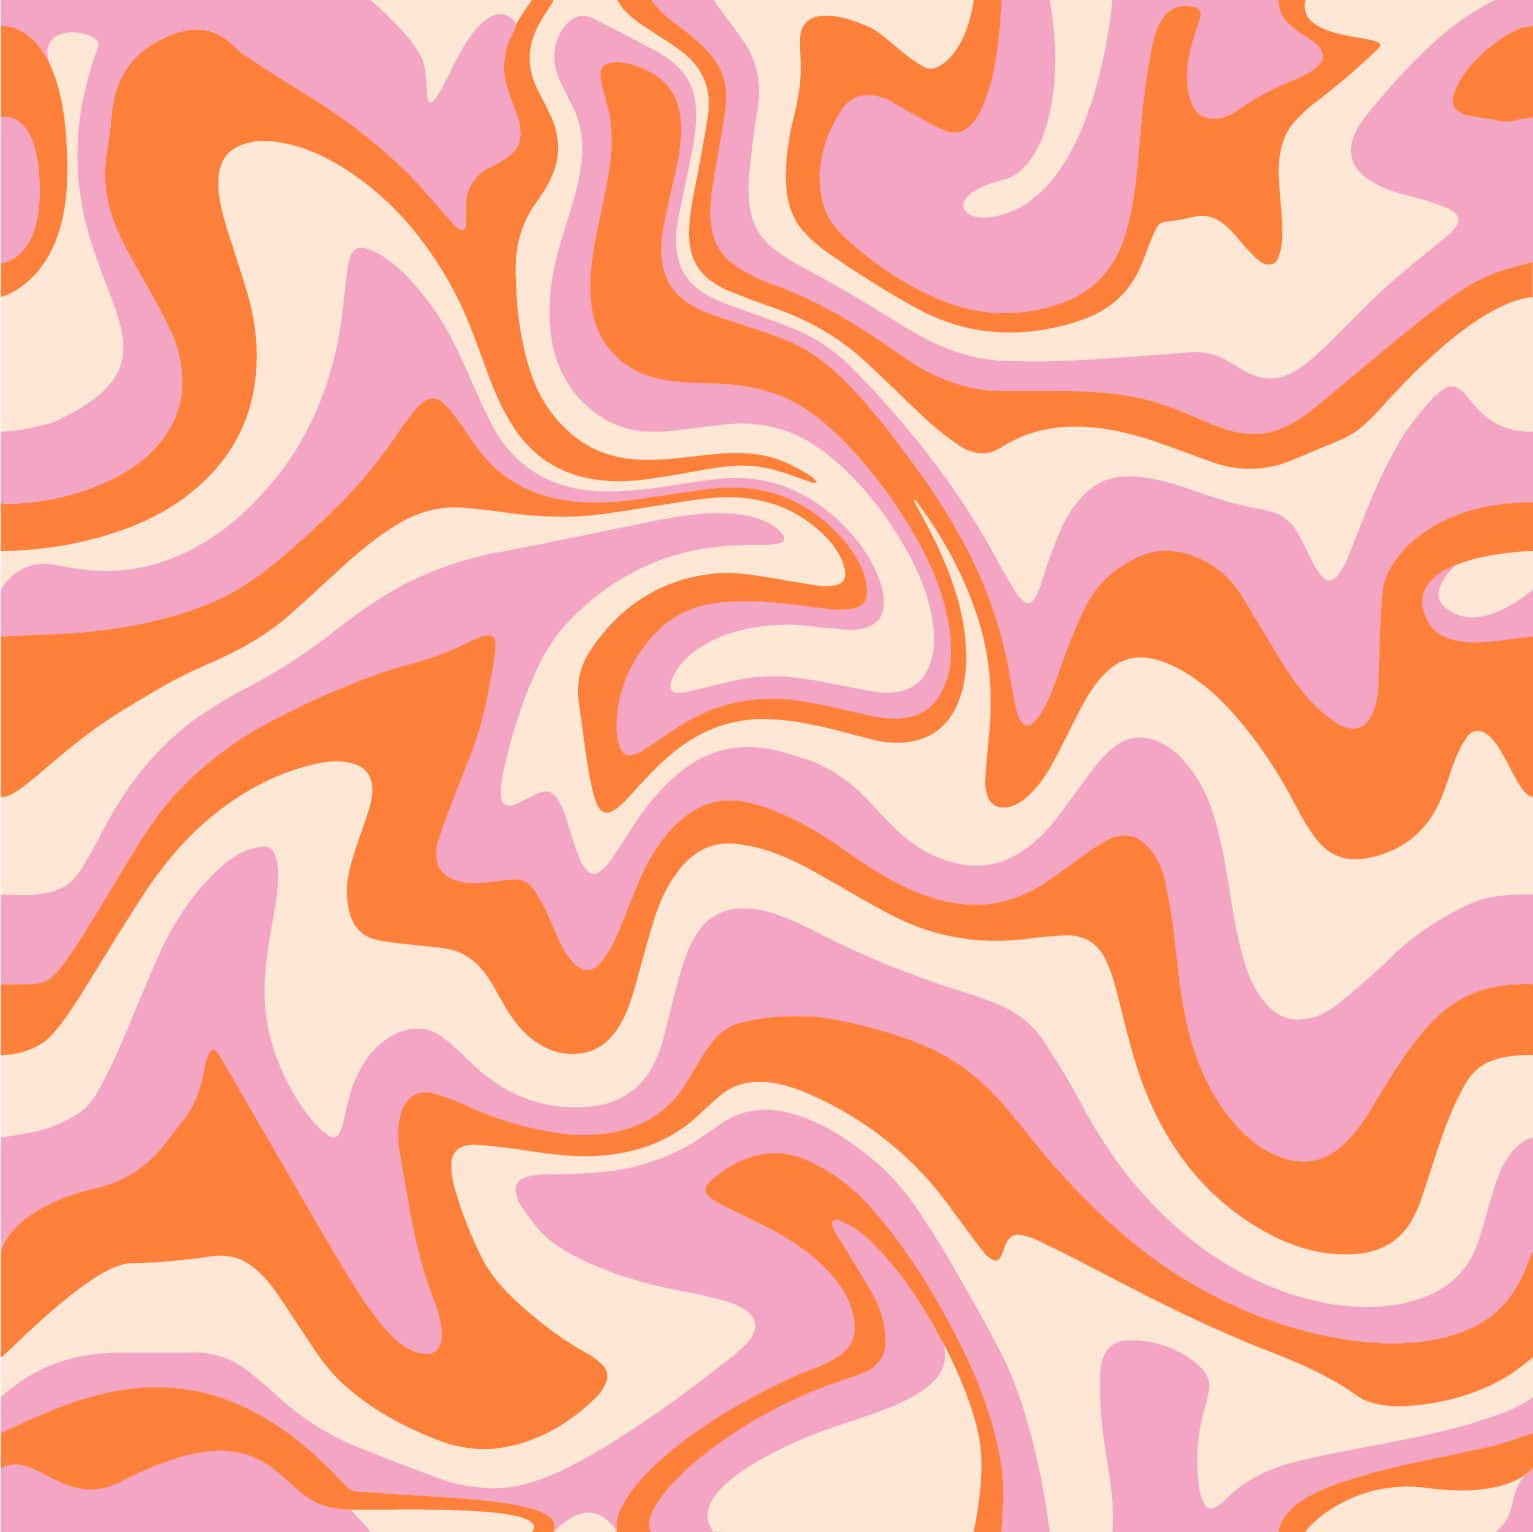 swirl design background